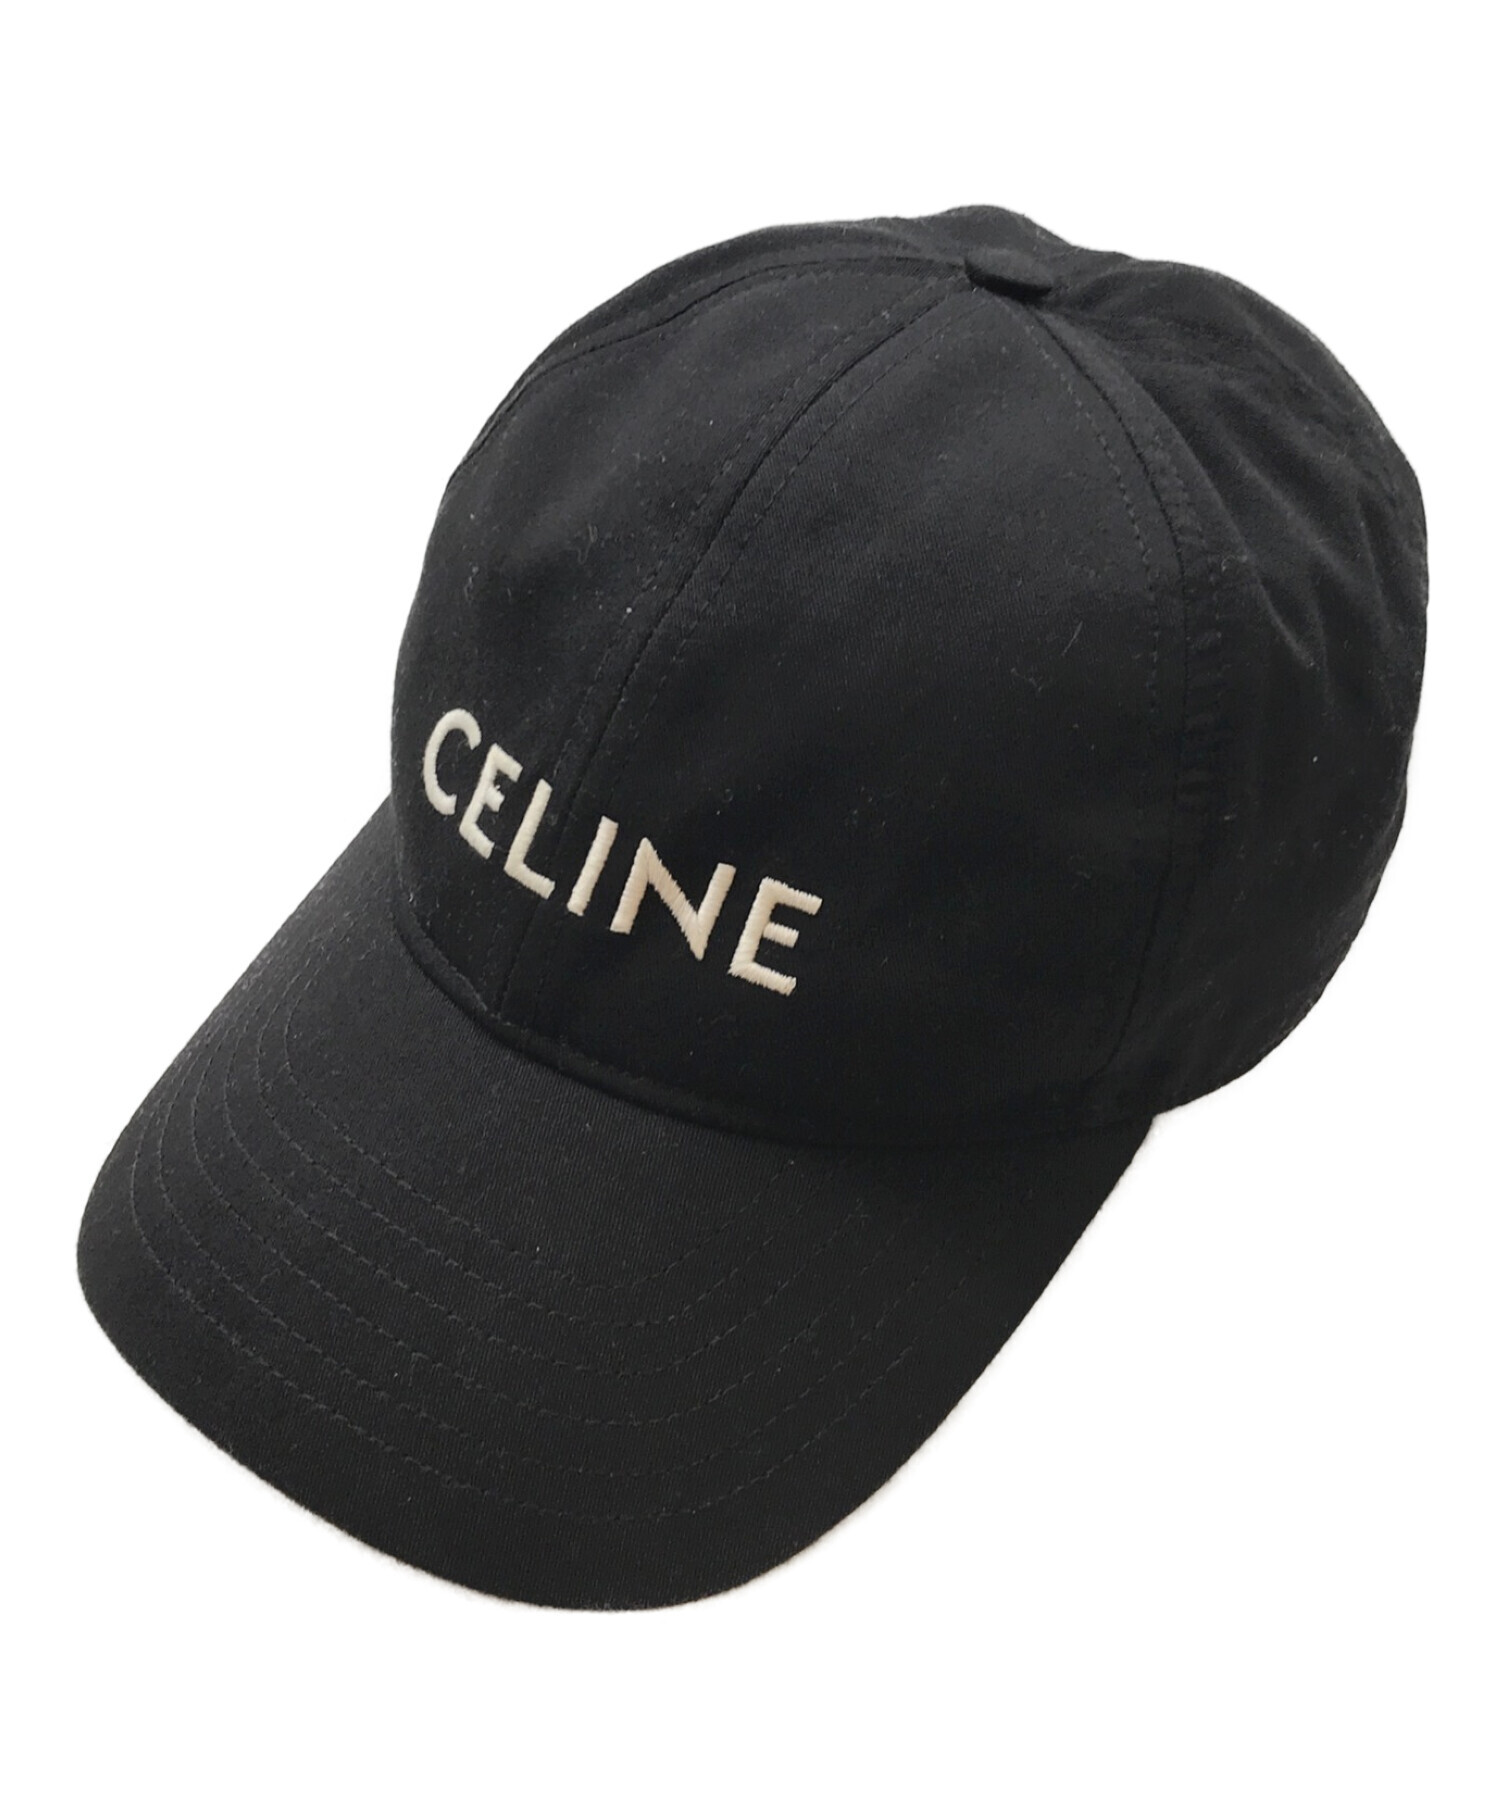 CELINE (セリーヌ) ロゴ刺繍ベースボールキャップ ブラック サイズ:L